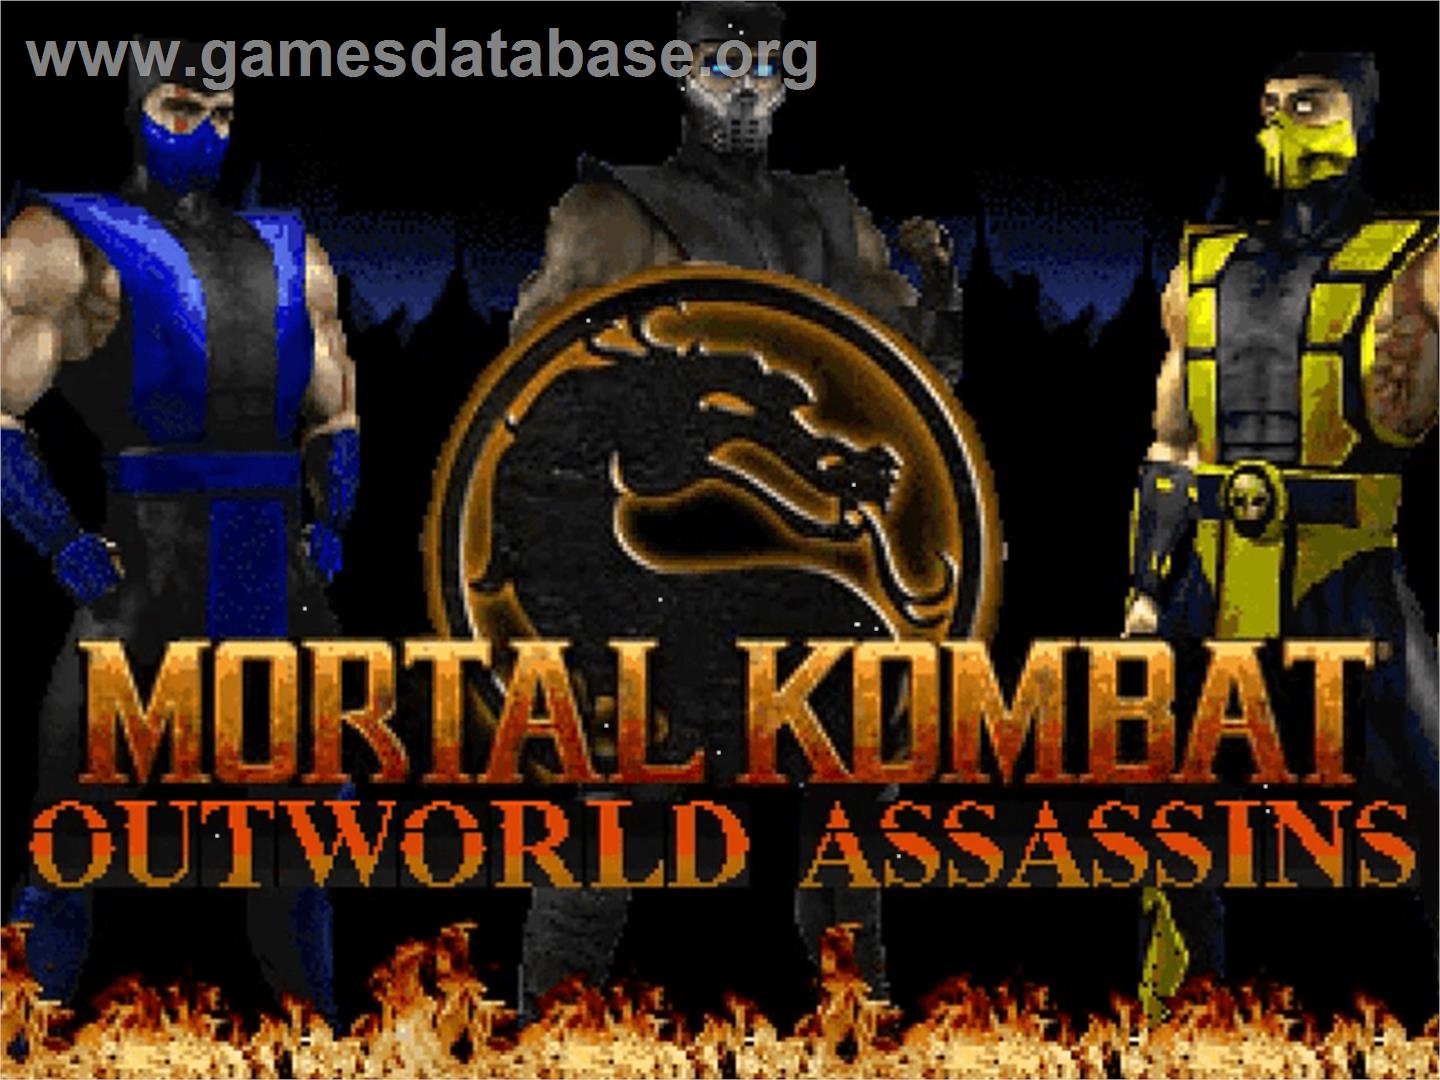 Mortal Kombat Outworld Assassins - OpenBOR - Artwork - Title Screen